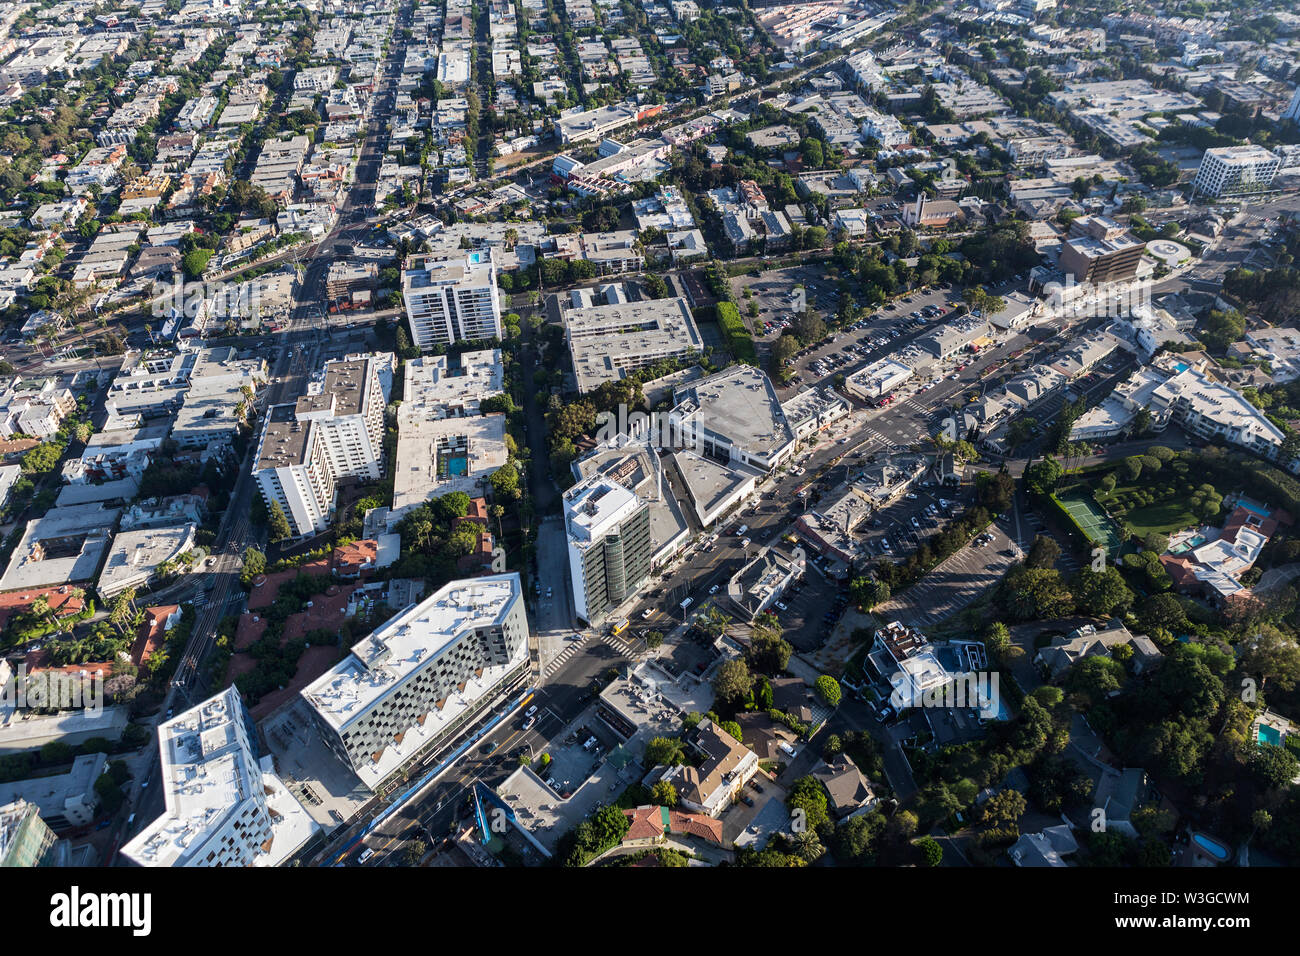 Vue aérienne de Sunset Blvd, rues et bâtiments dans la région de West Hollywood Los Angeles County, Californie. Banque D'Images